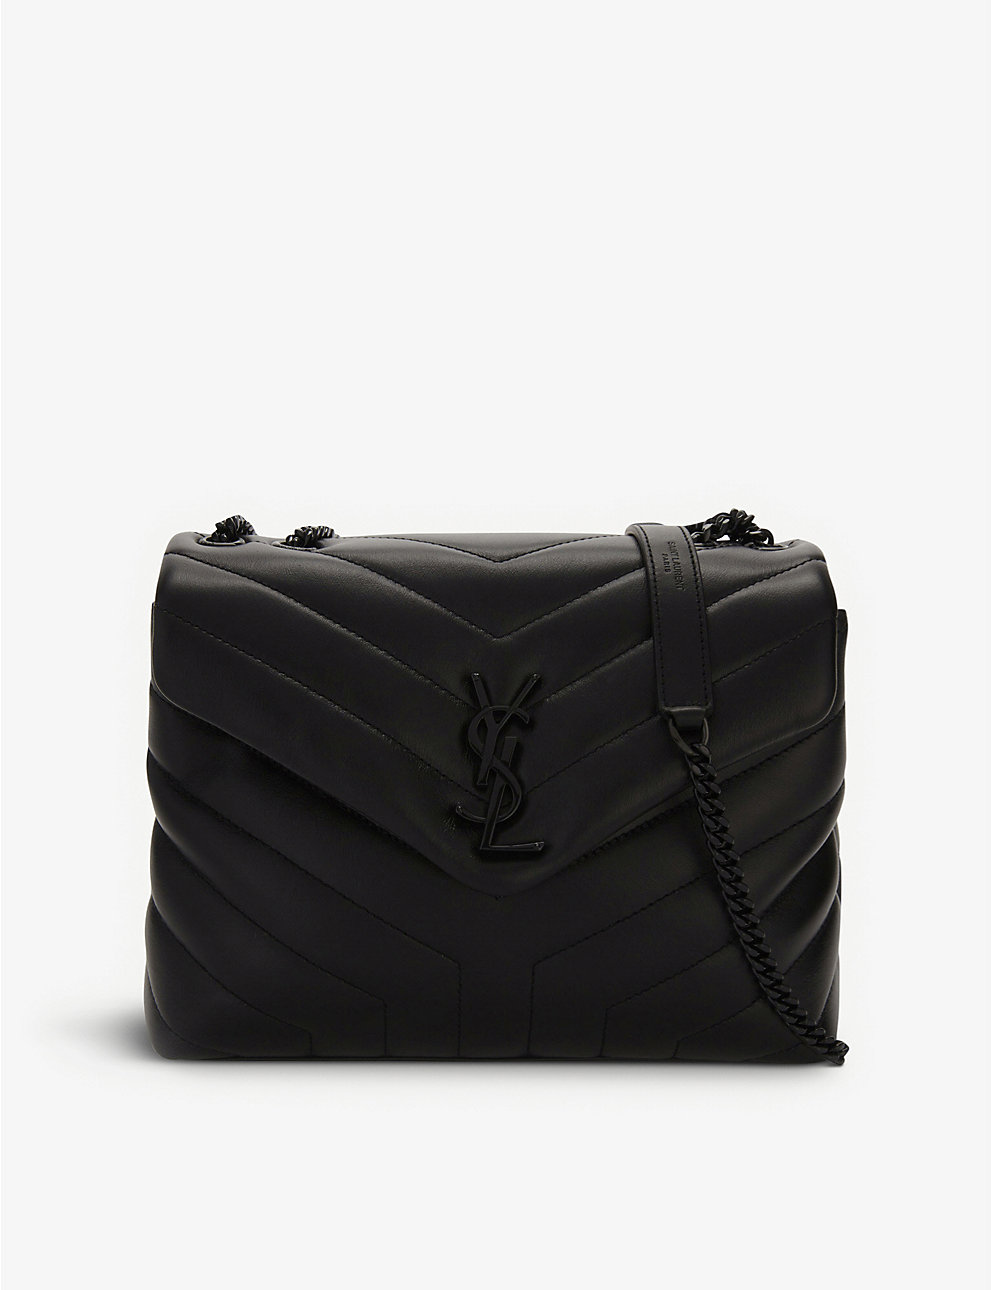 saint laurent loulou bolso de negro/negro Tienda de bolsos Yves Saint Laurent de alta